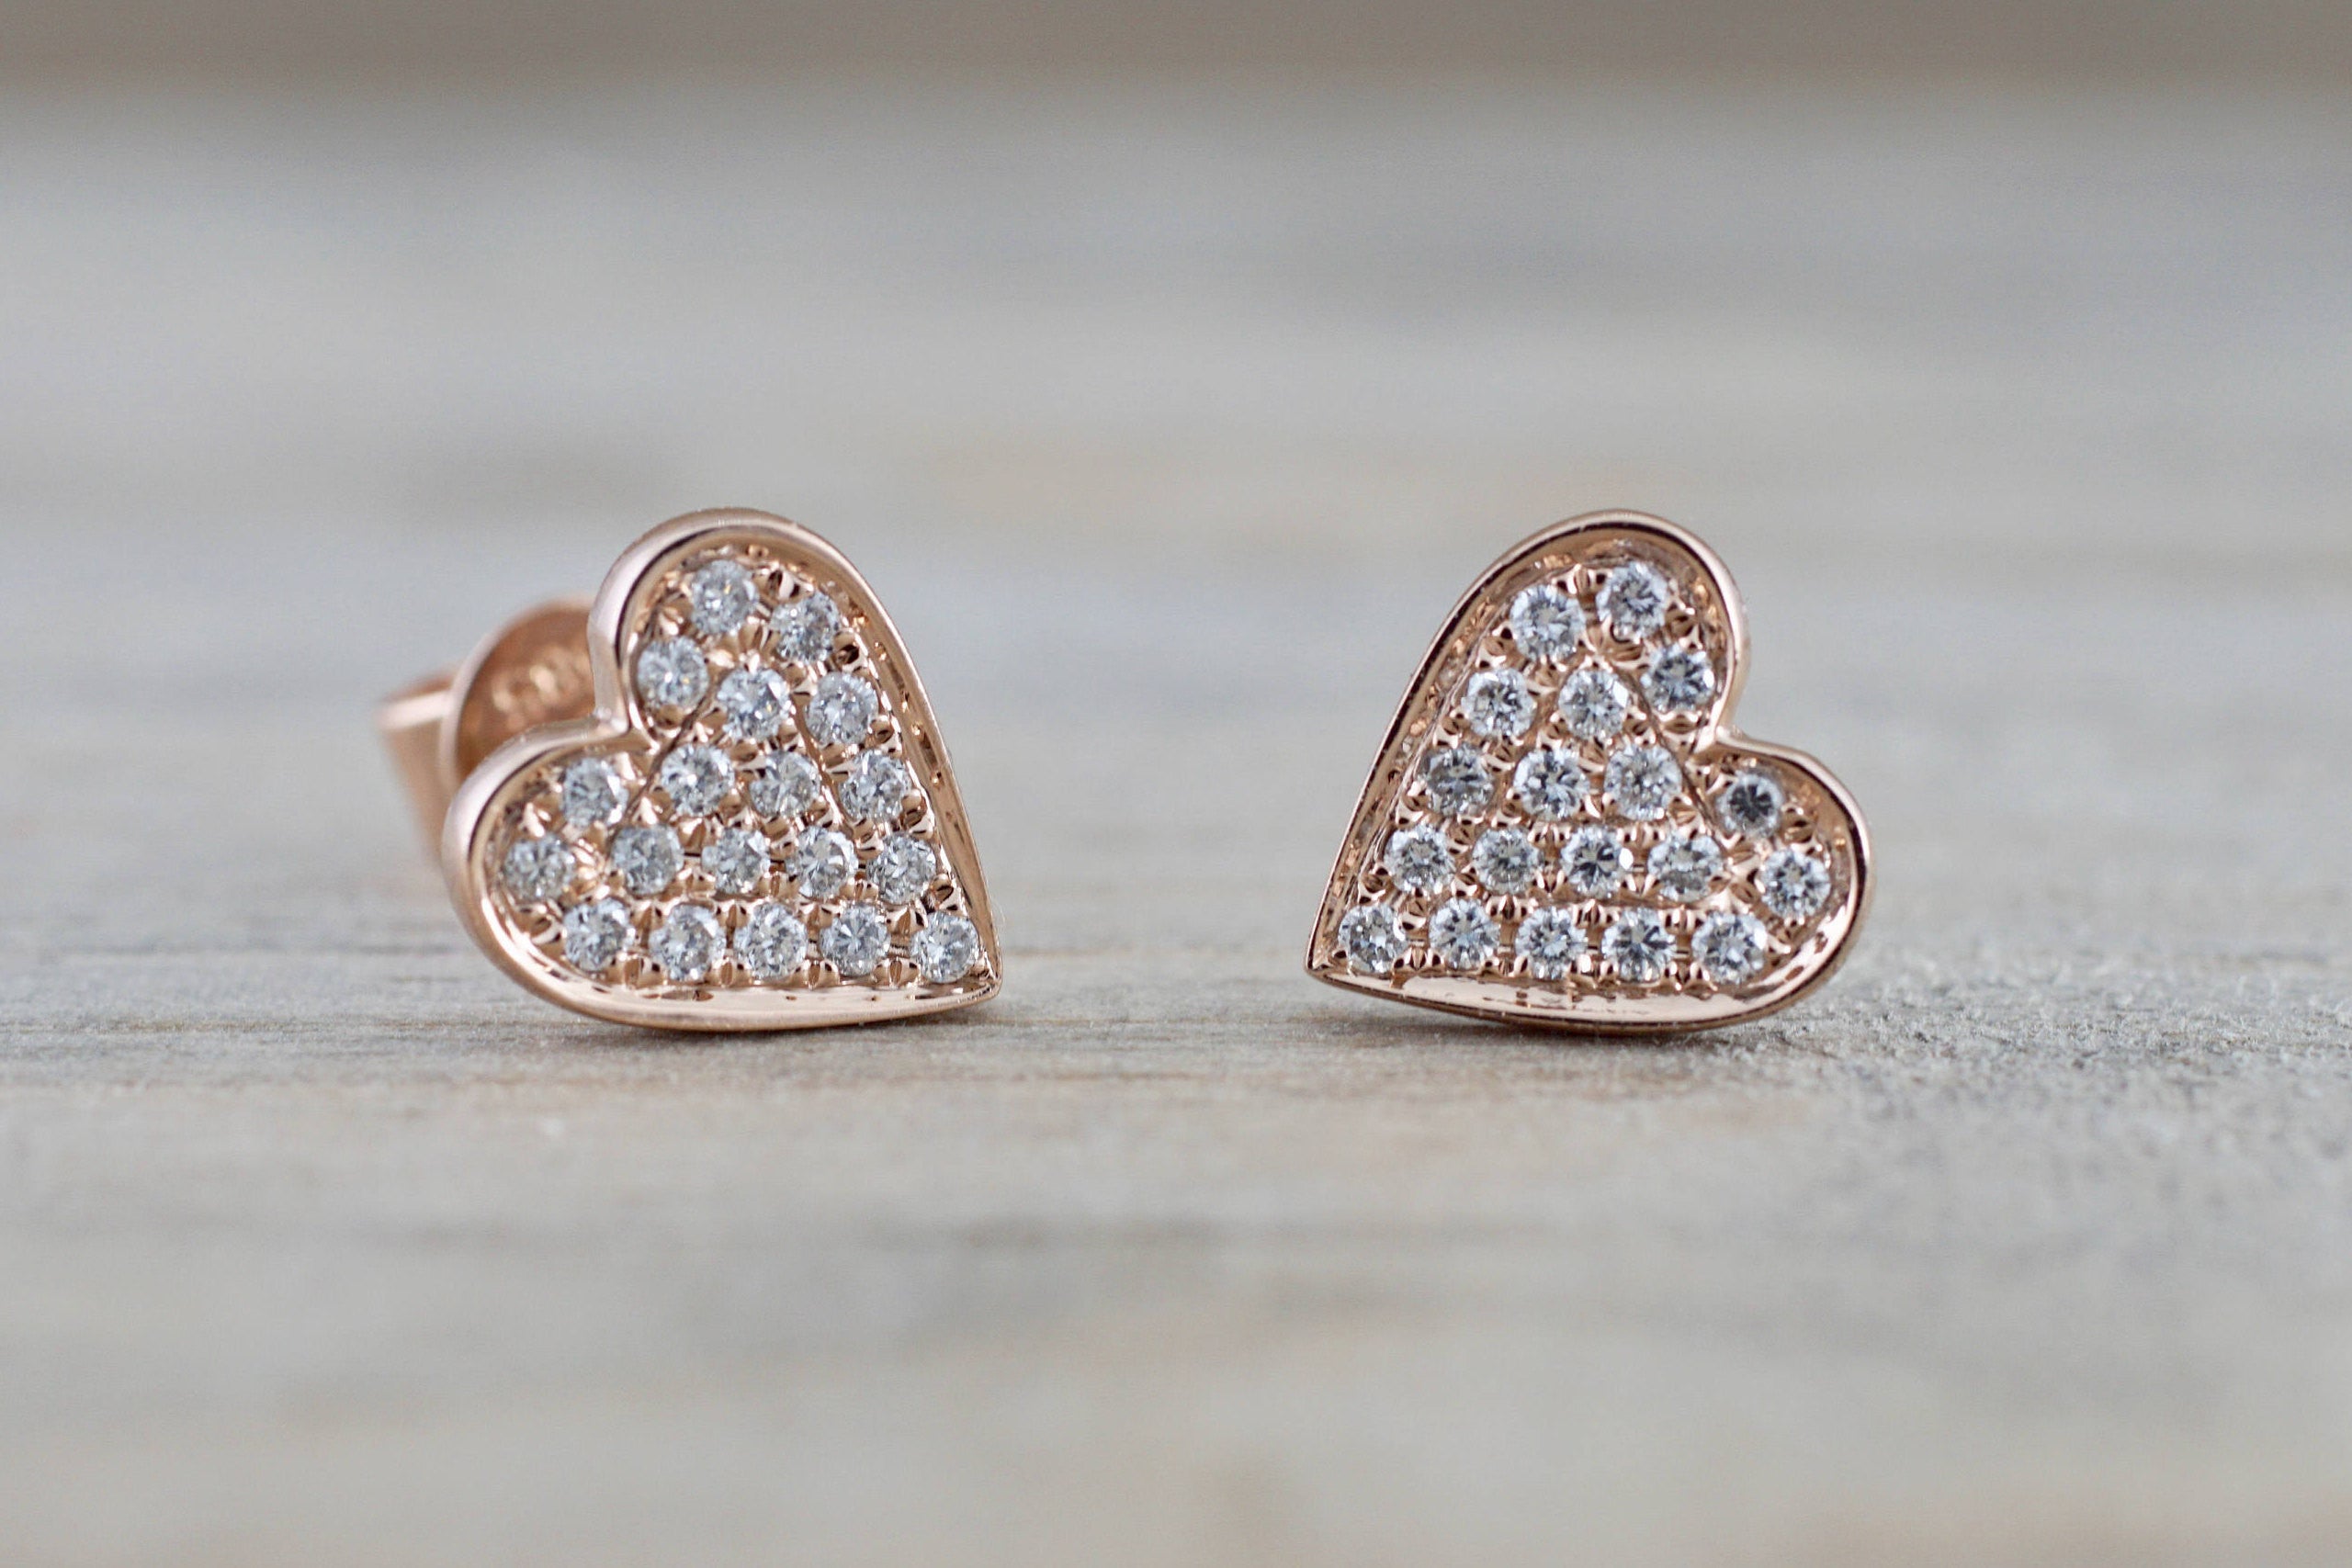 Heart Stud Earrings With Diamonds In Sterling Silver